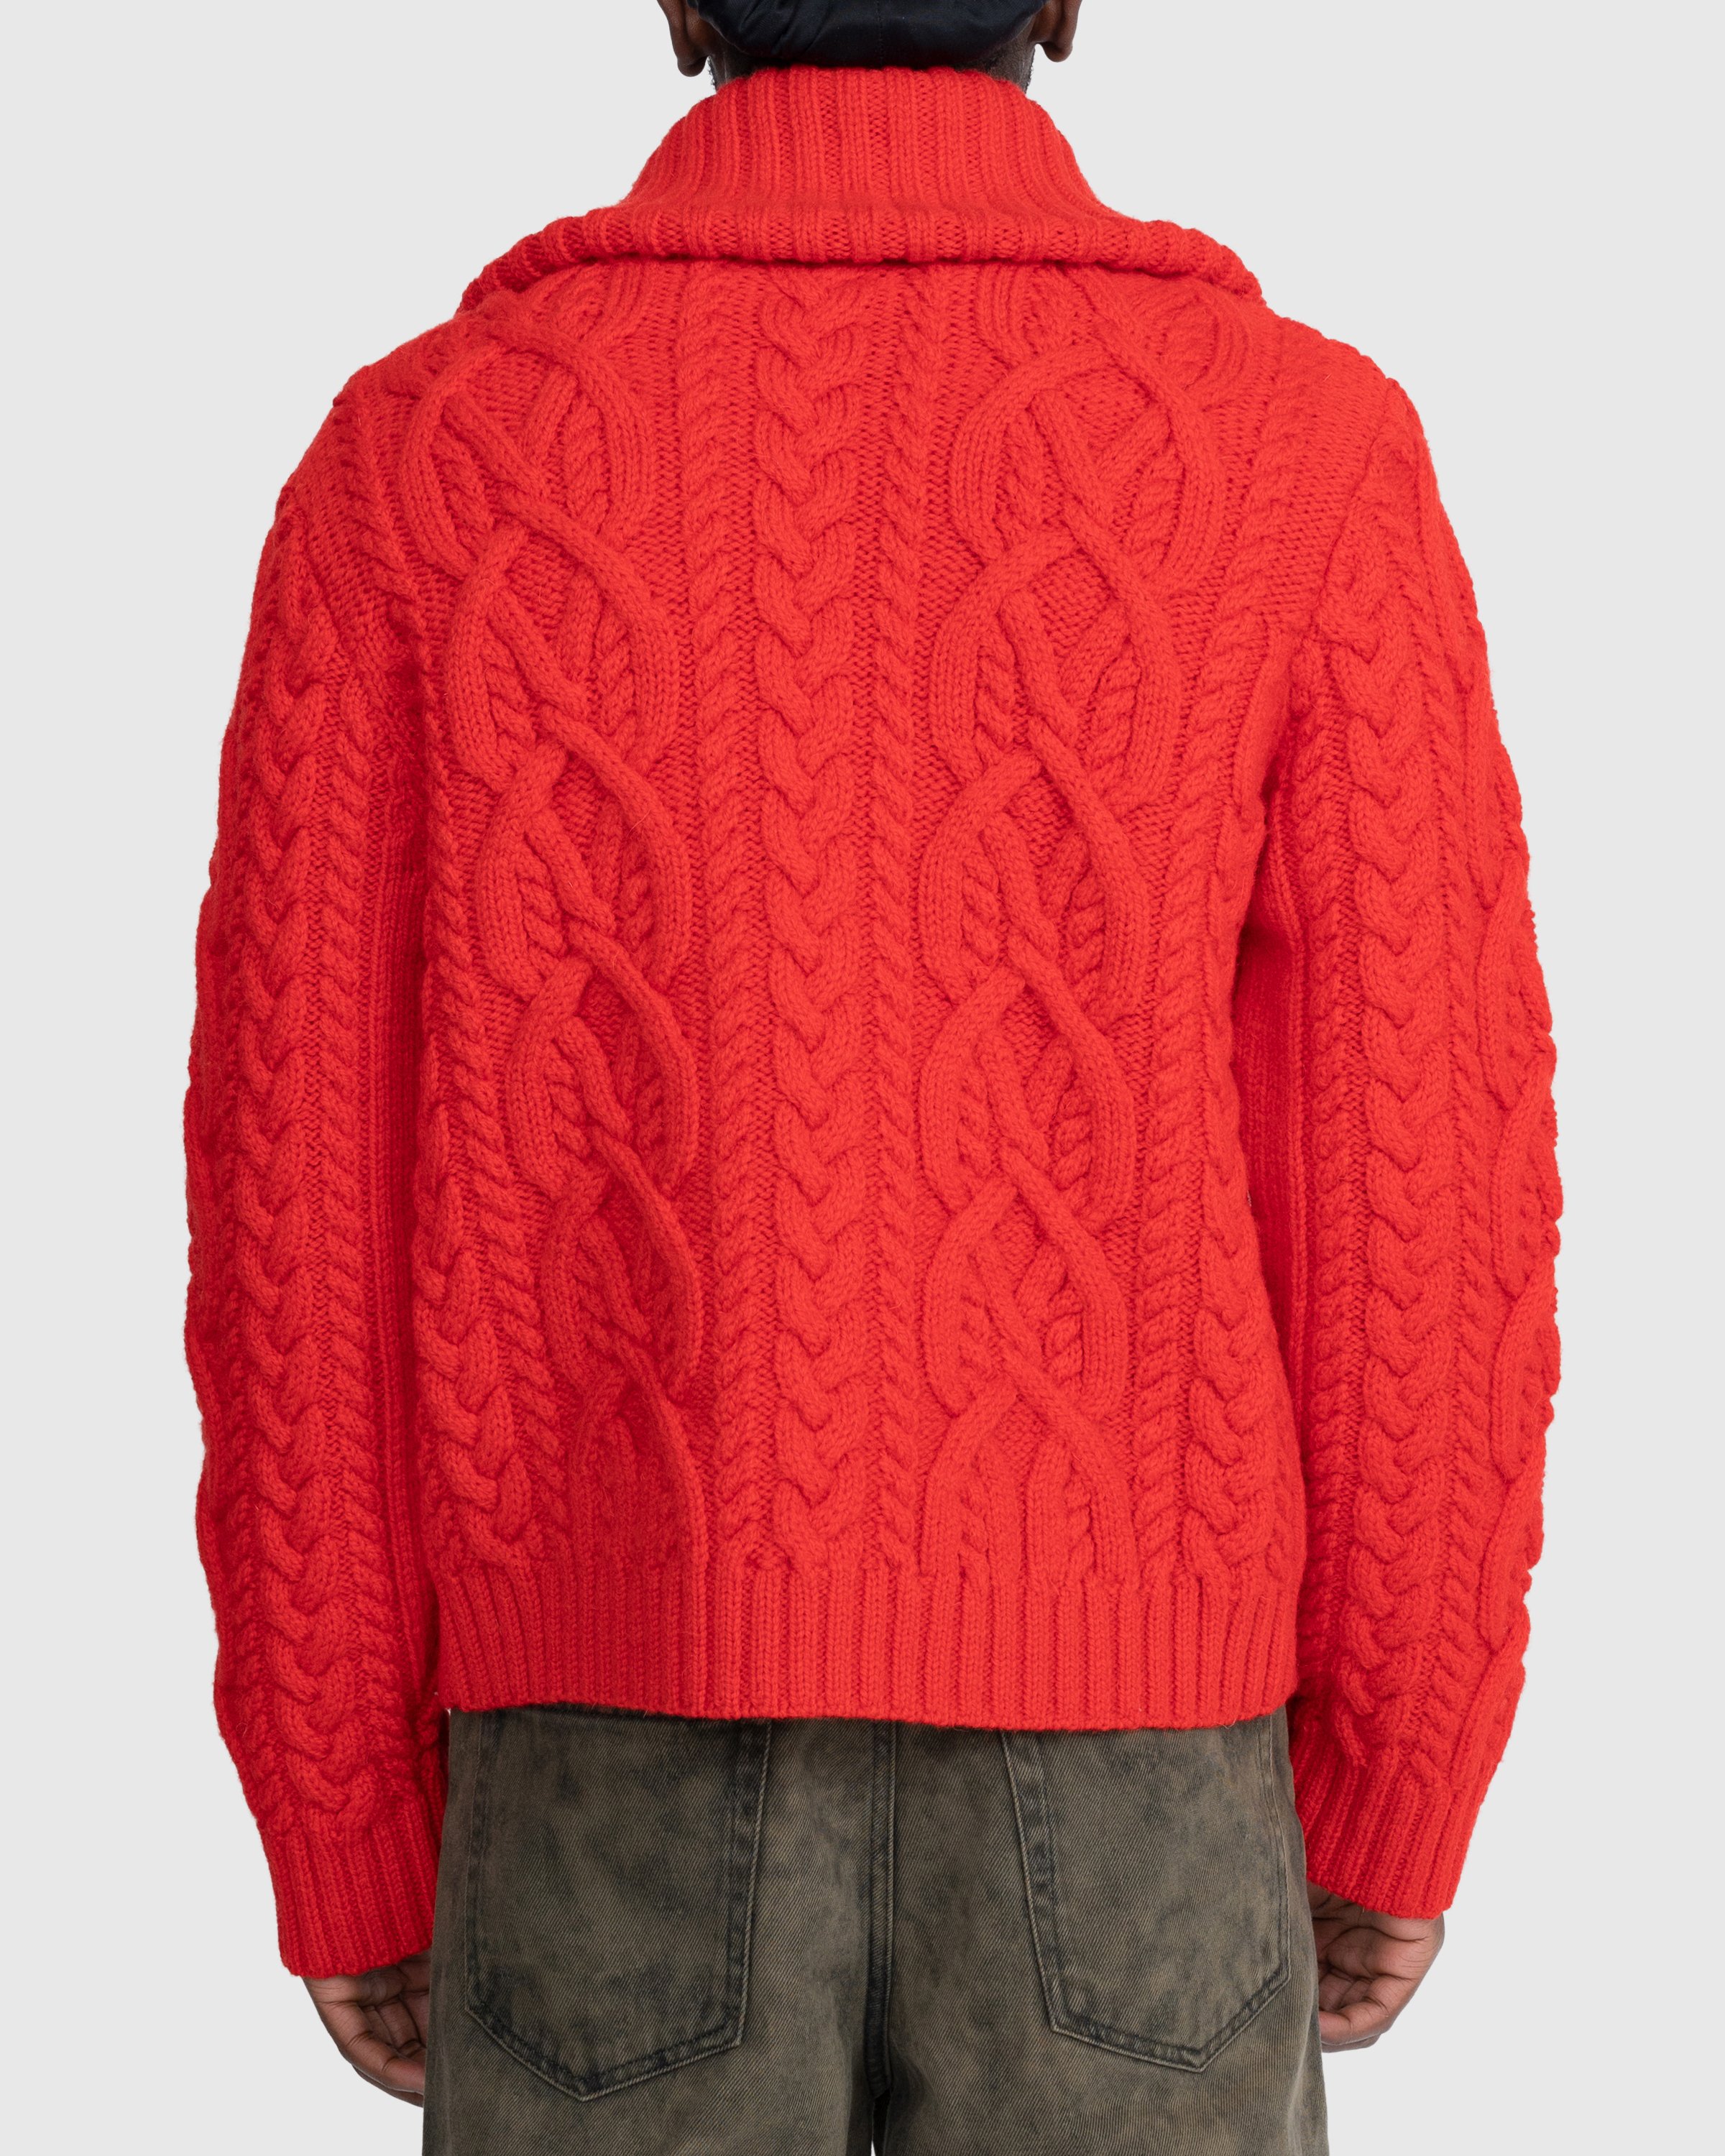 Dries van Noten - Naldo Cardigan Red - Clothing - Red - Image 4